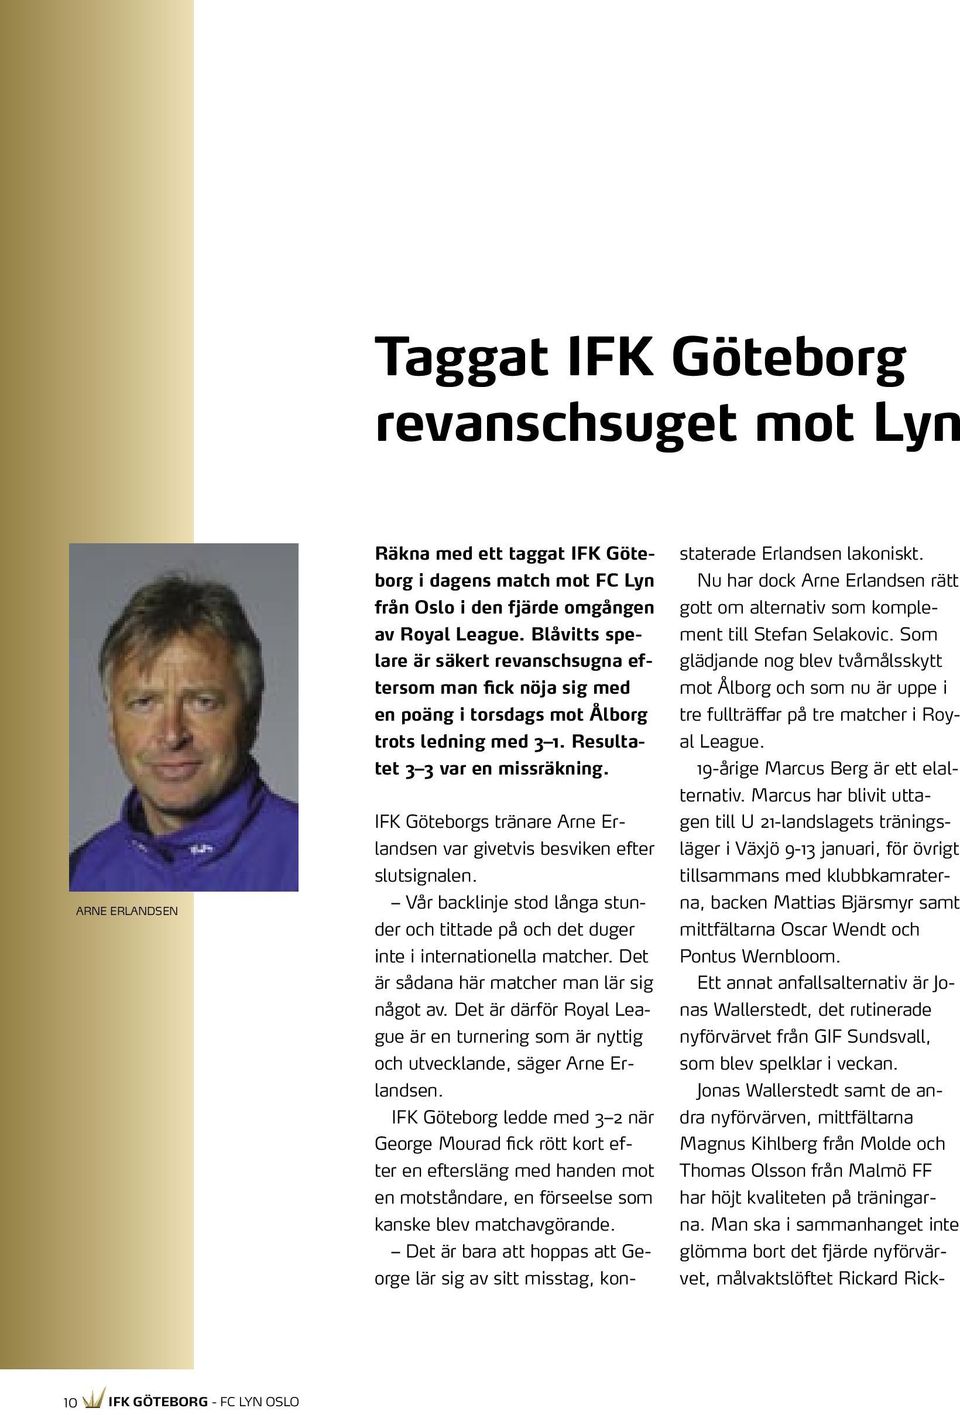 IFK Göteborgs tränare Arne Erlandsen var givetvis besviken efter slutsignalen. Vår backlinje stod långa stunder och tittade på och det duger inte i internationella matcher.